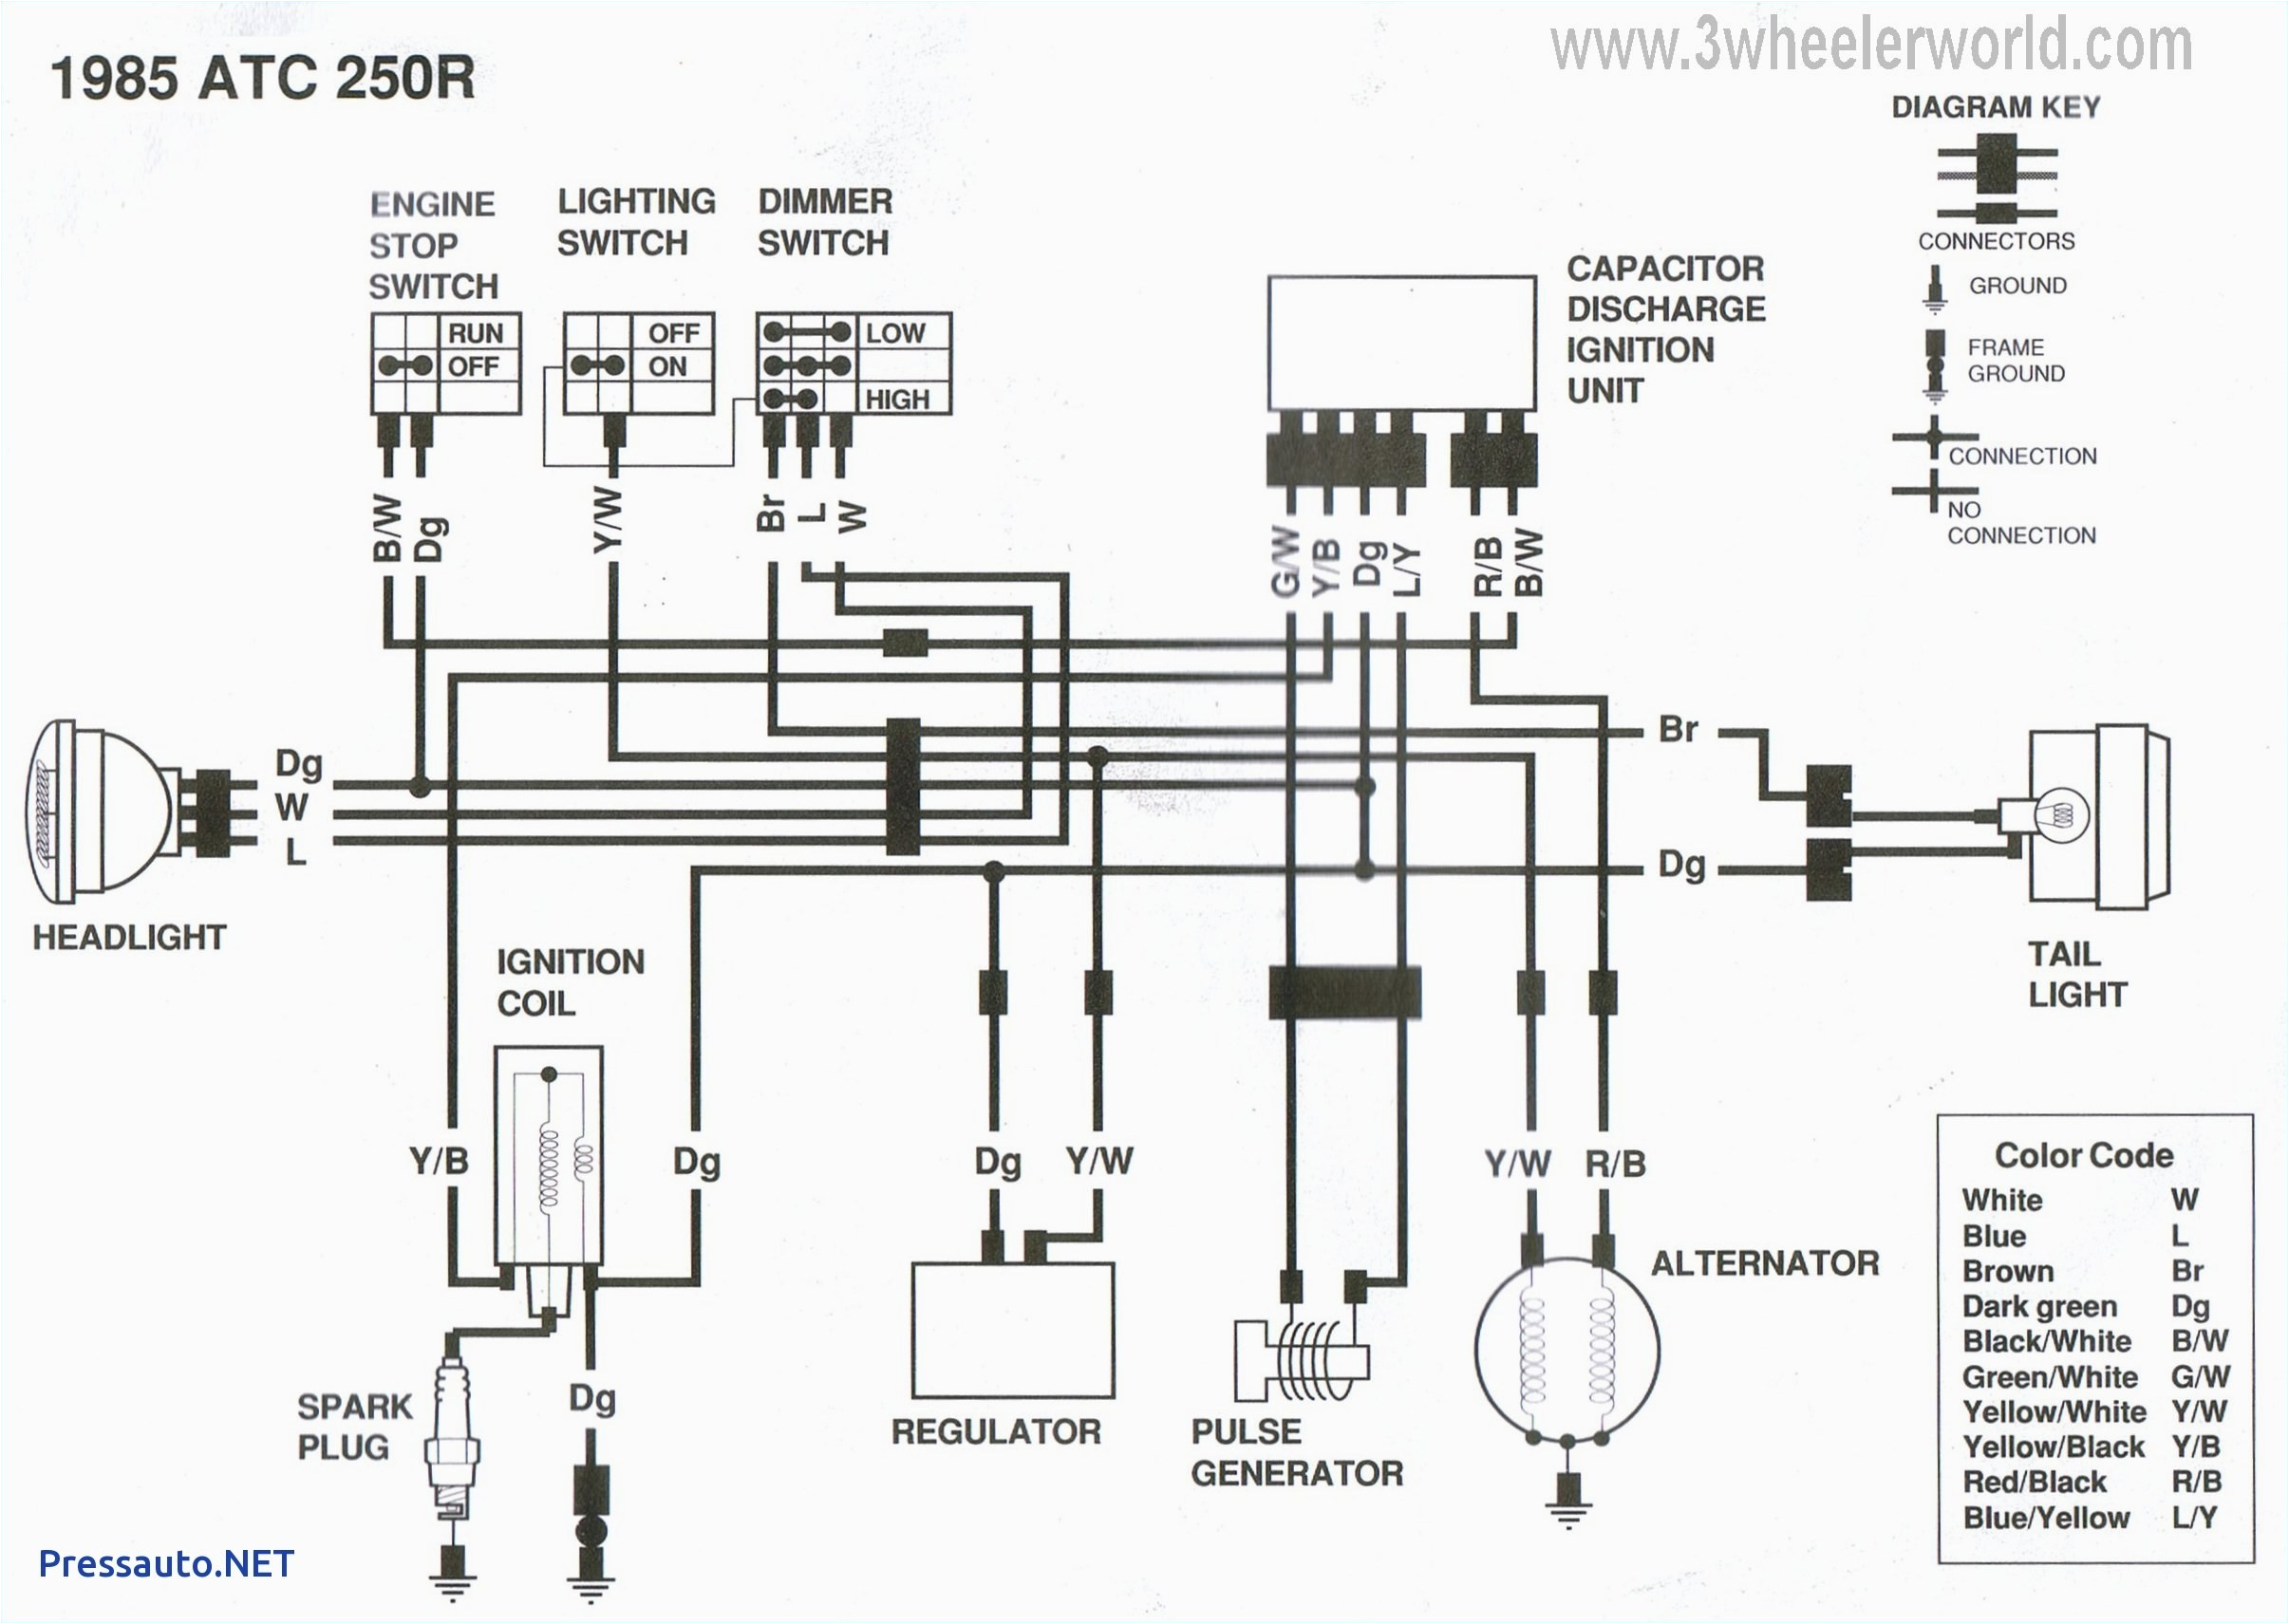 suzuki motorcycle wiring diagrams free wiring diagram sheetsuzuki motorcycle wiring diagrams free wiring diagram expert diagrams